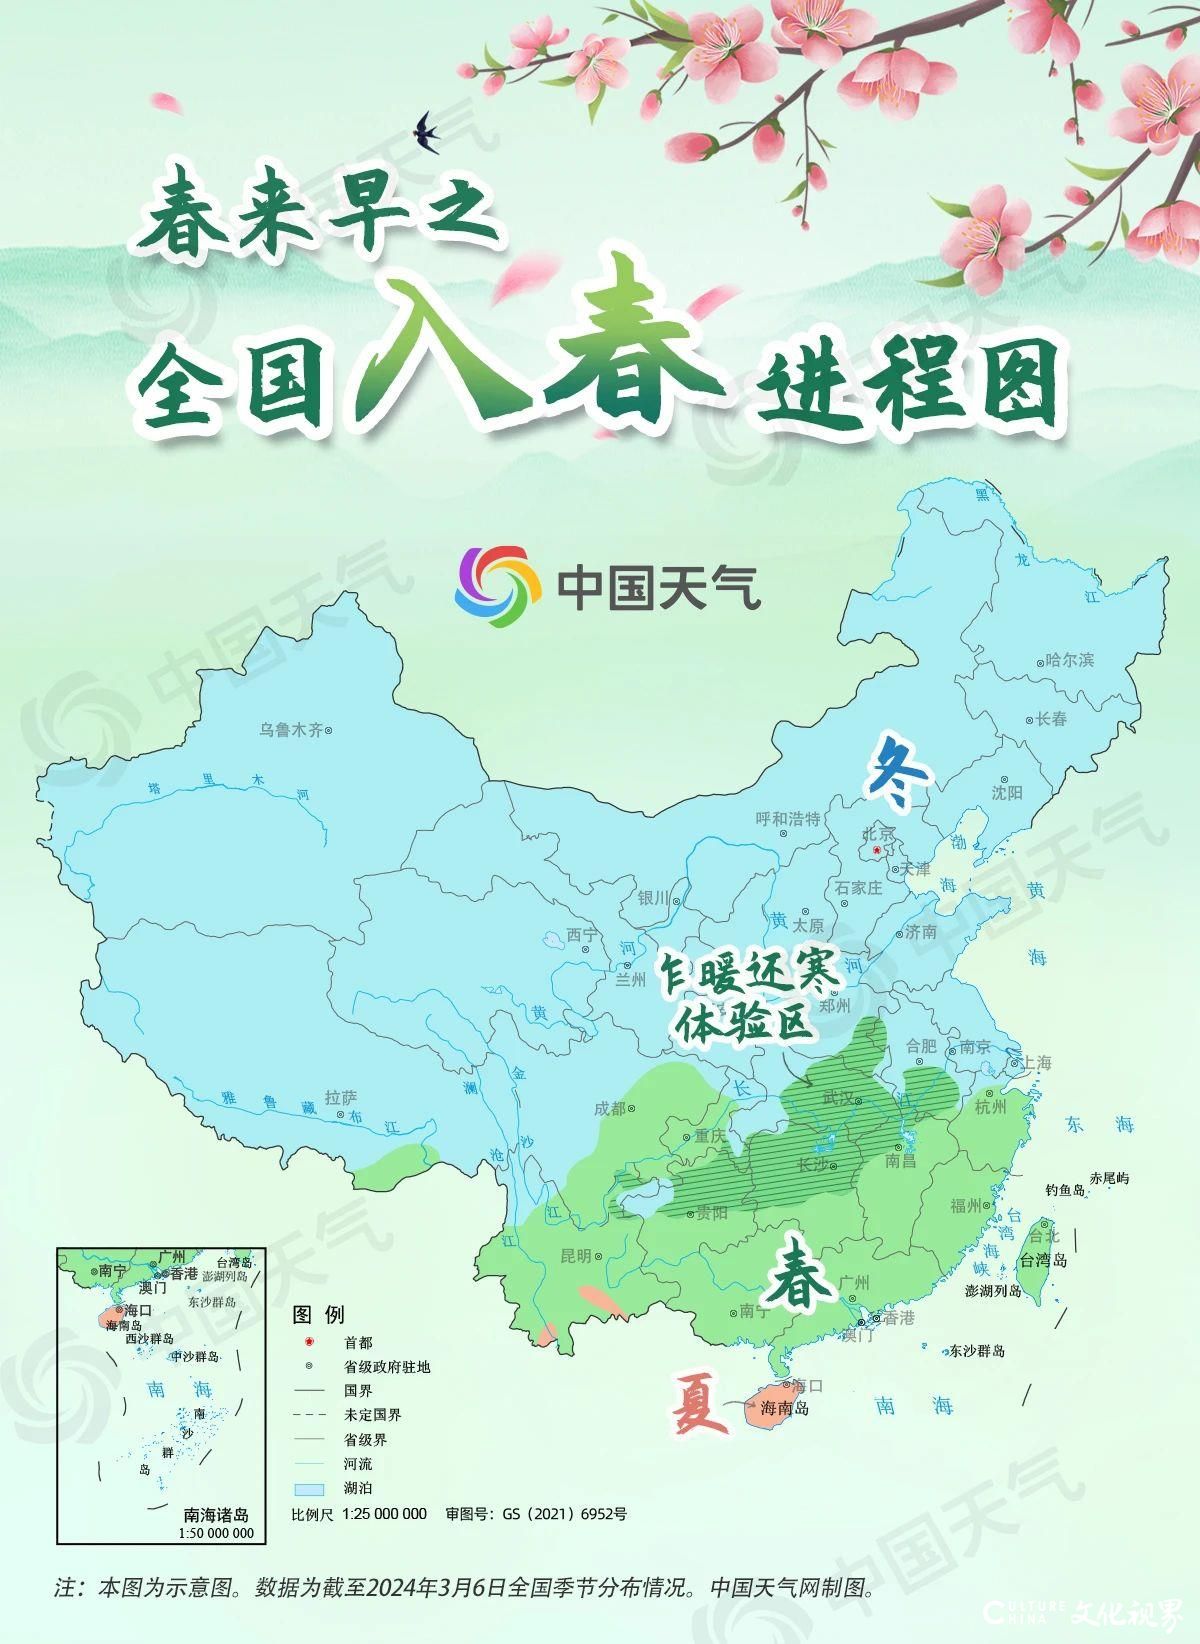 2024年入春进程图：春天的脚步已跨越长江，华北多地春天或提前到来